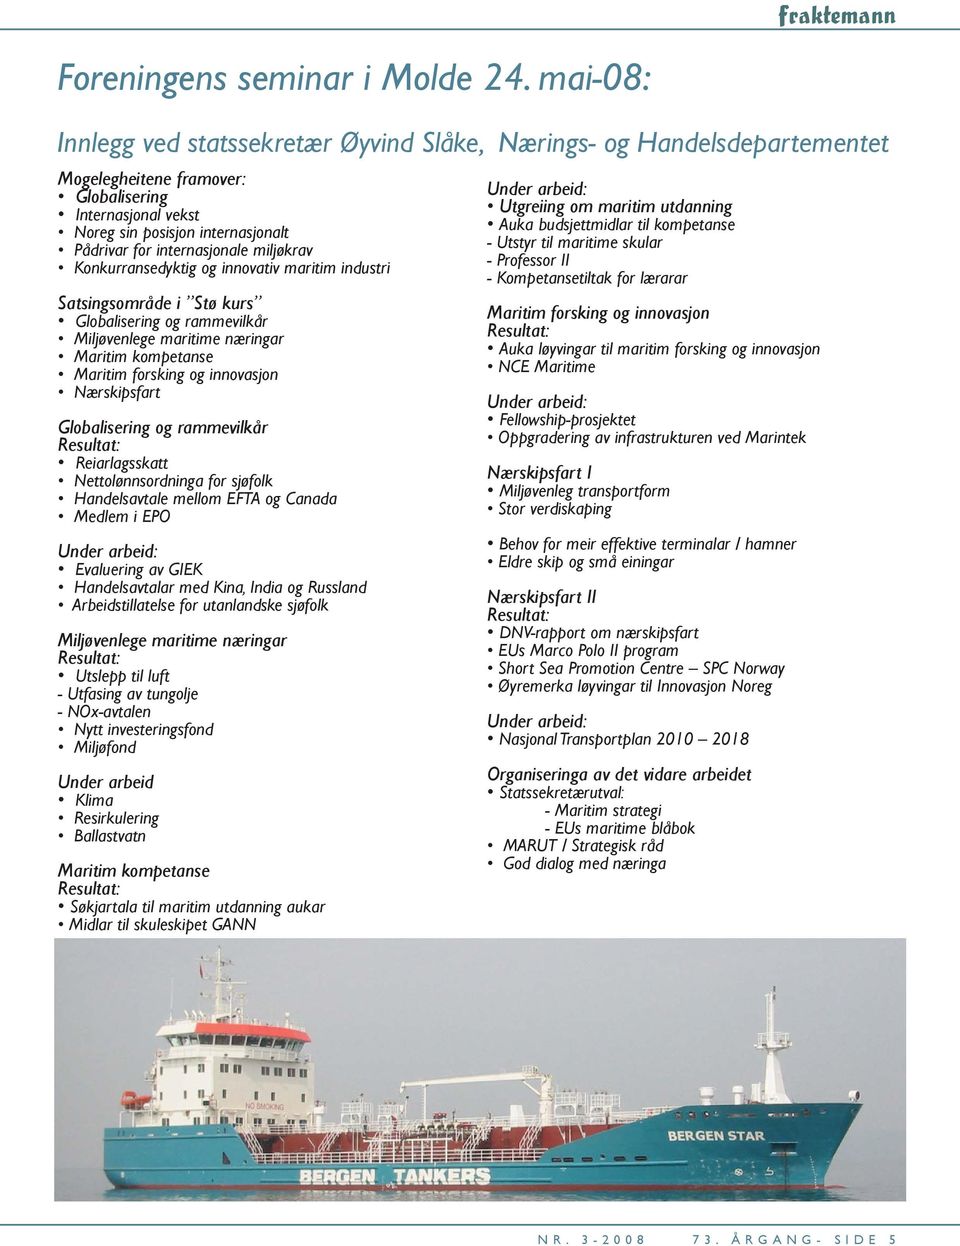 internasjonale miljøkrav Konkurransedyktig og innovativ maritim industri Satsingsområde i Stø kurs Globalisering og rammevilkår Miljøvenlege maritime næringar Maritim kompetanse Maritim forsking og